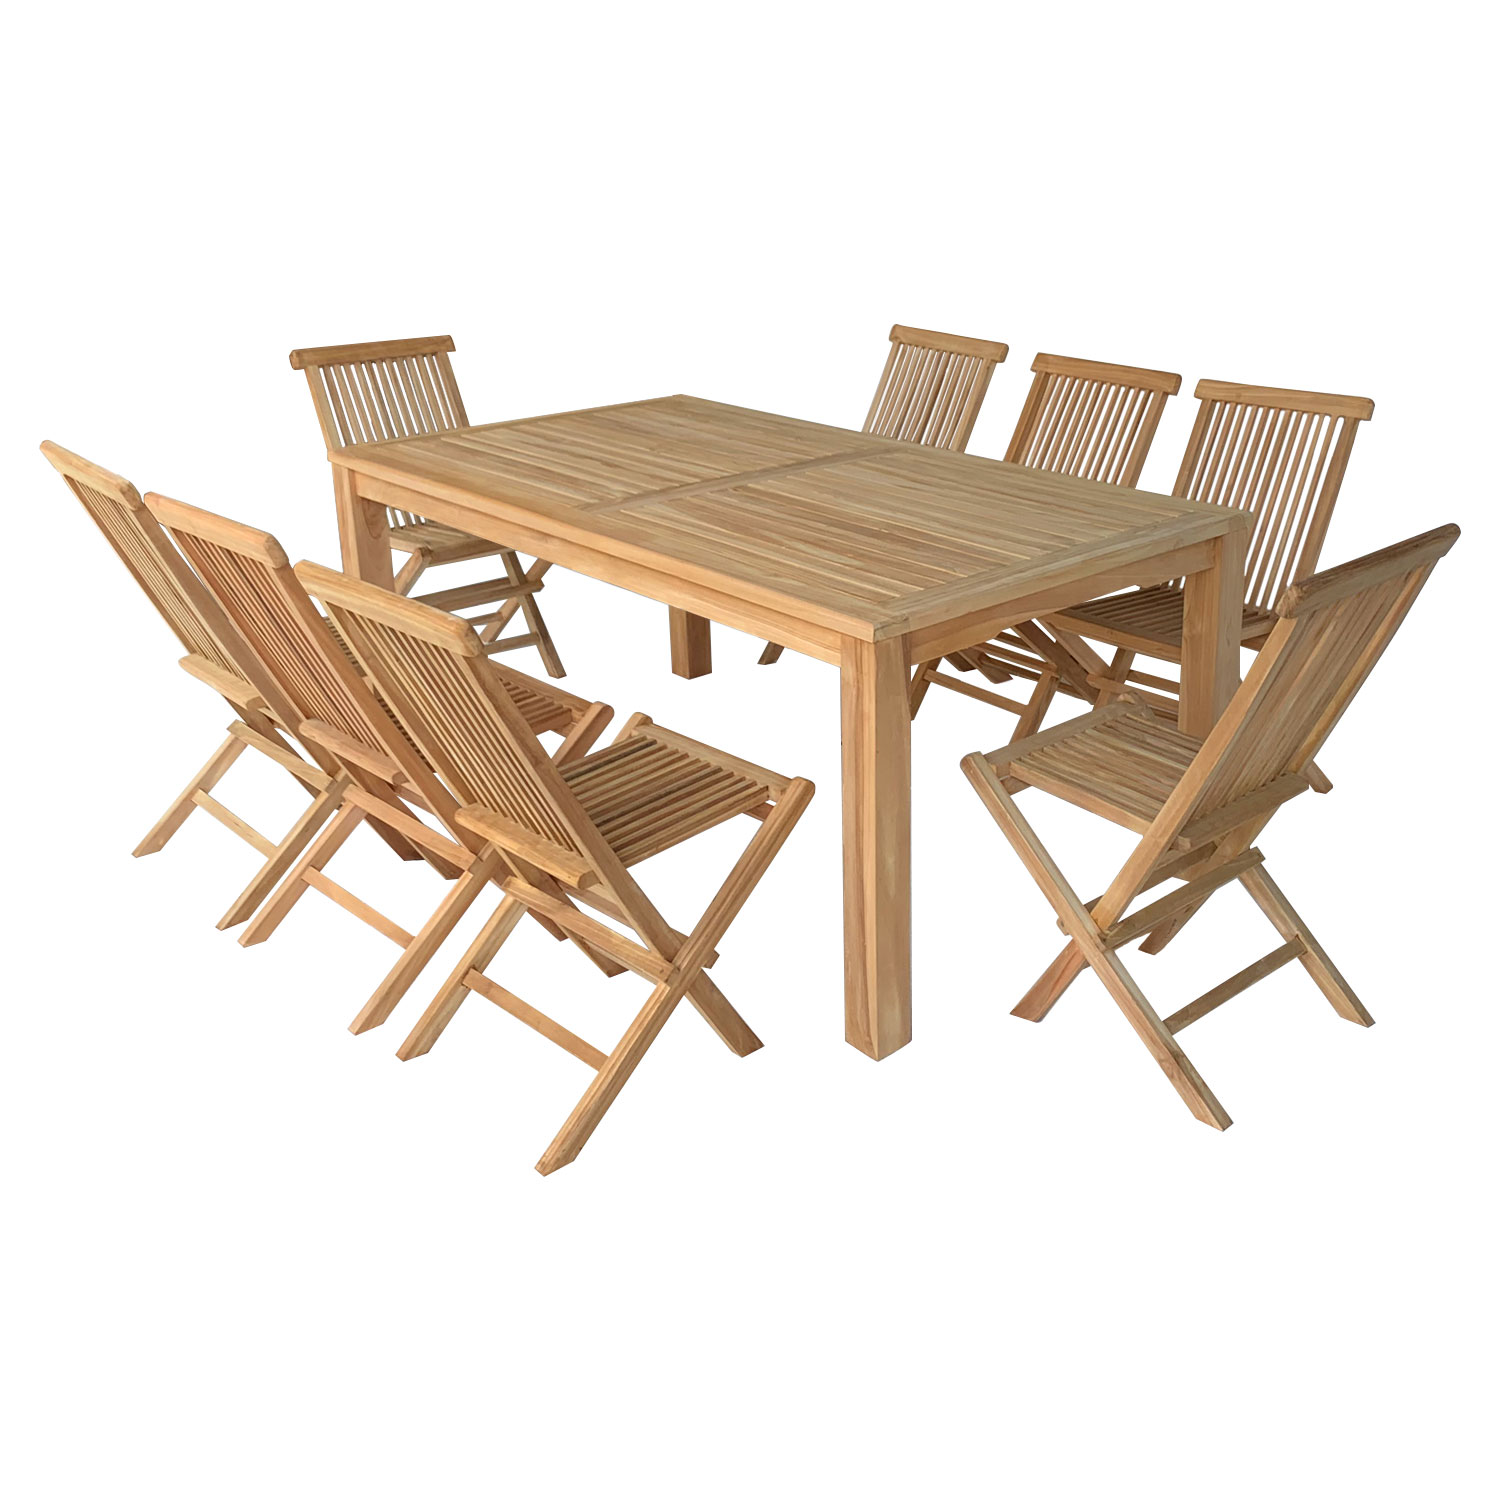 Teakhouten tuinmeubelen JAVA - rechthoekige tafel en klapstoelen - 8 zitplaatsen